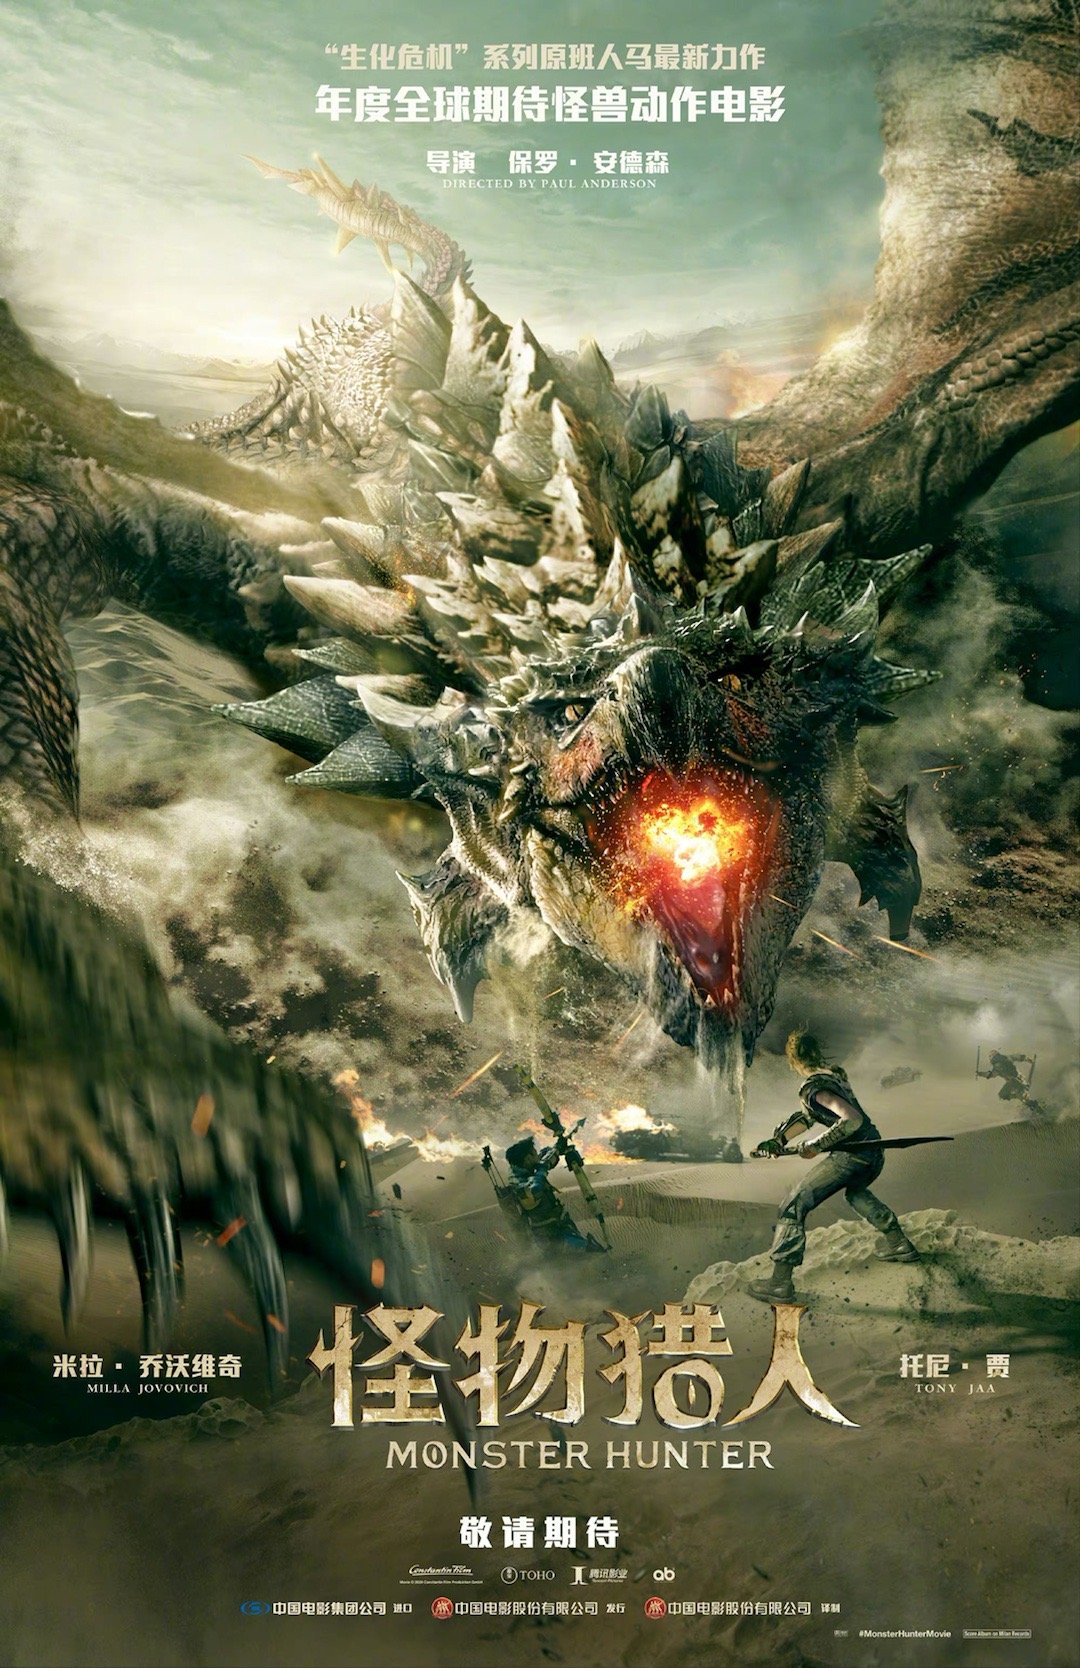 游戏改编电影《怪物猎人》中文预告 确认引进中国内地